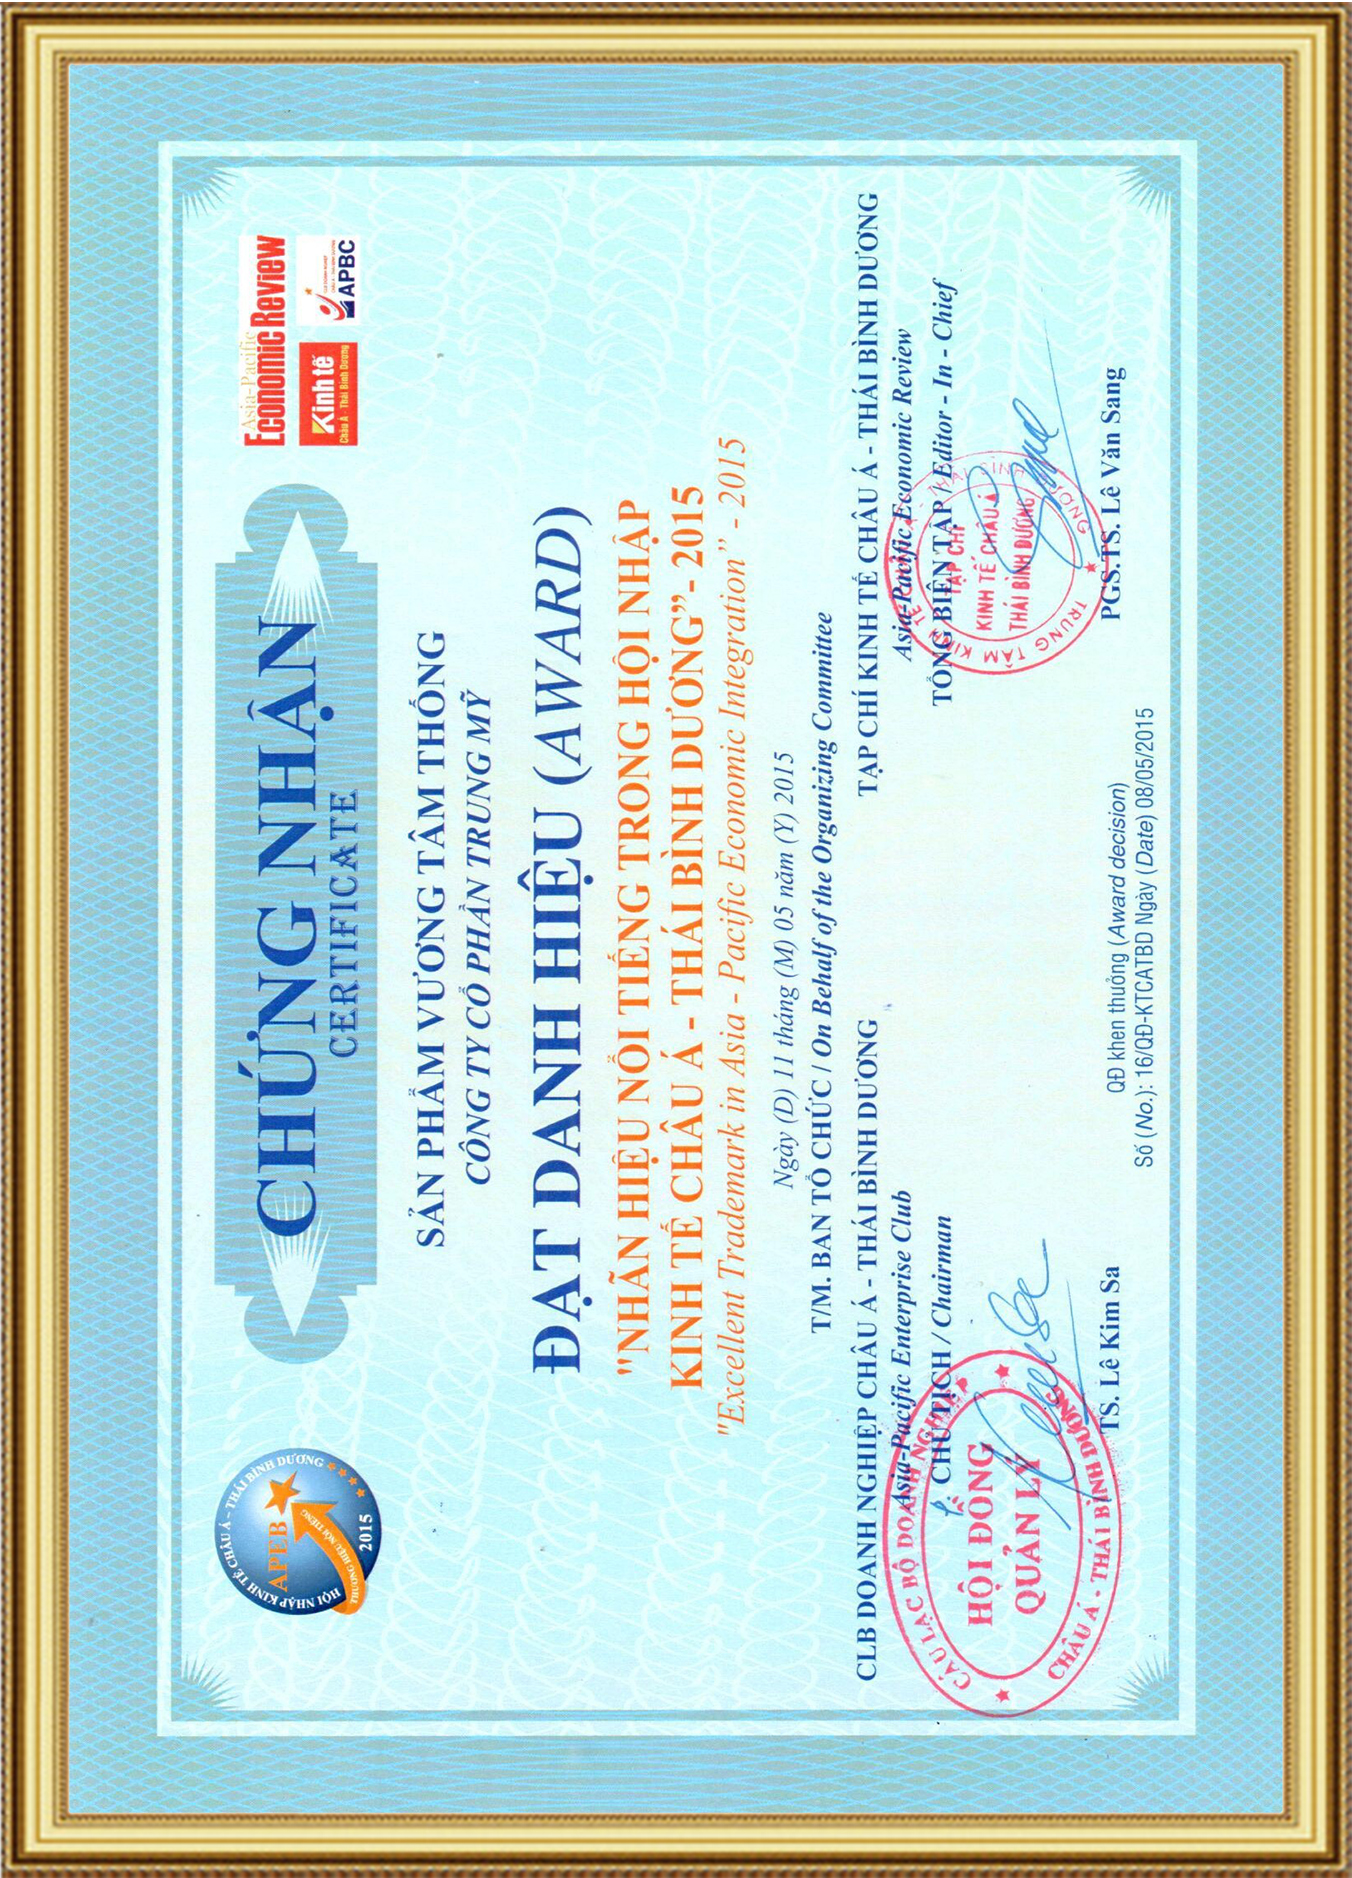 TPCN Vương Tâm Thống nhận giải thưởng “Nhãn hiệu nổi tiếng trong hội nhập kinh tế Châu Á - Thái Bình Dương”